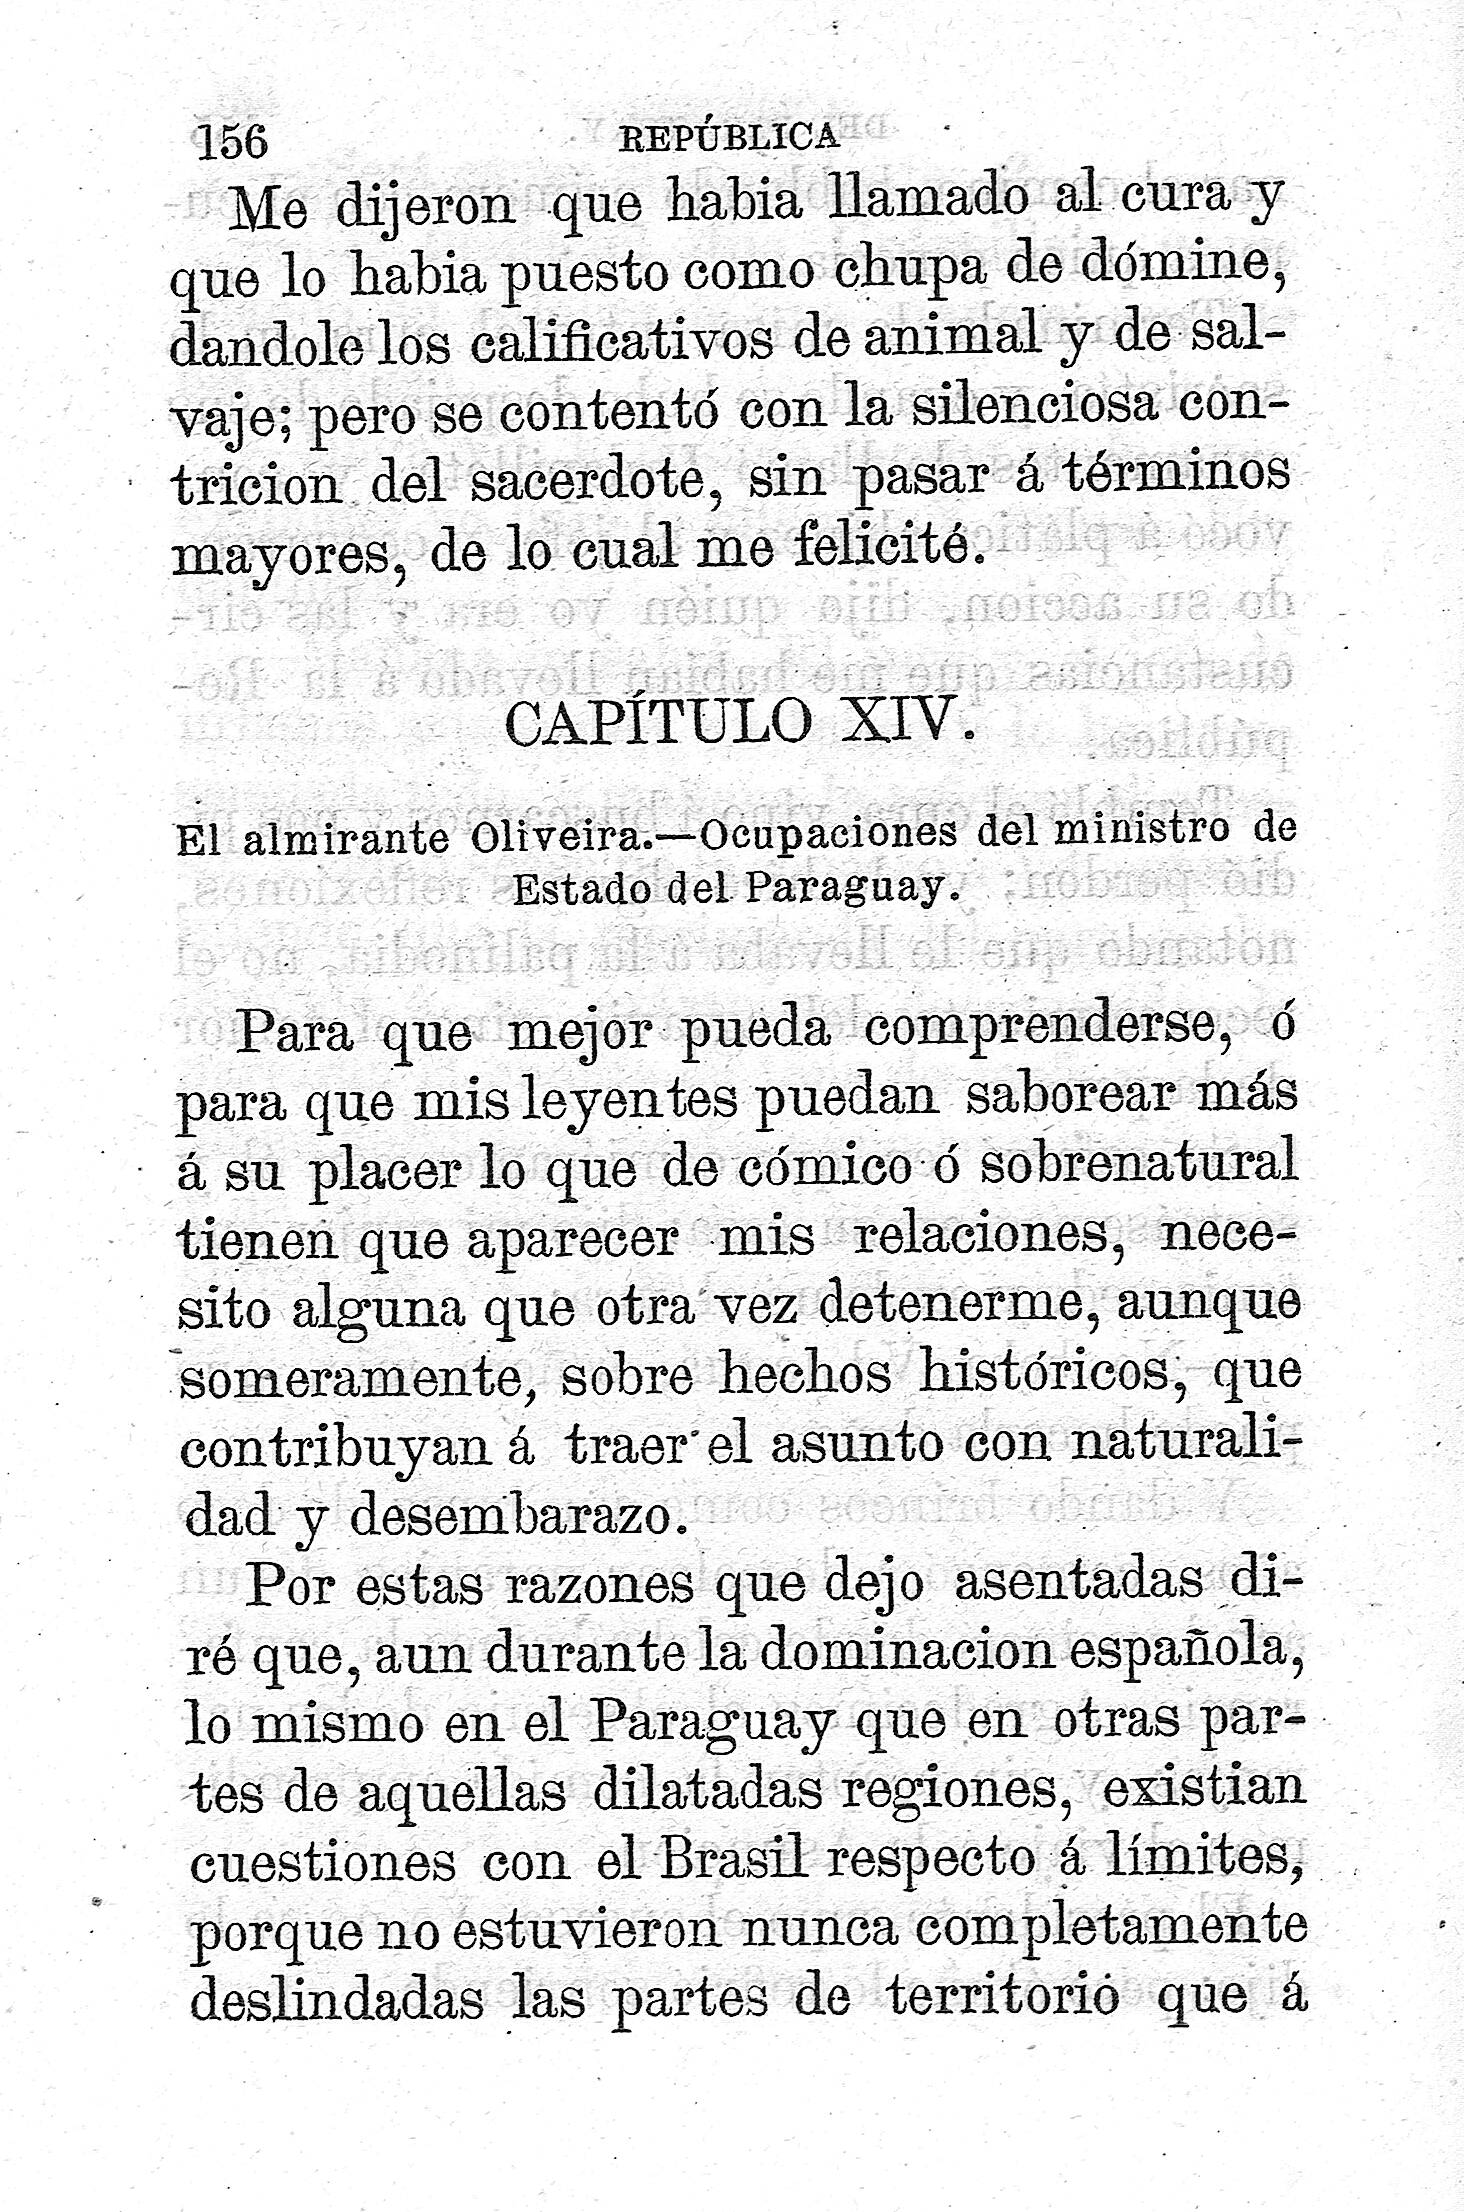 Capitulo XIV. El Almirante Oliveira.- Ocupaciones del ministerio de Estado de Paraguay